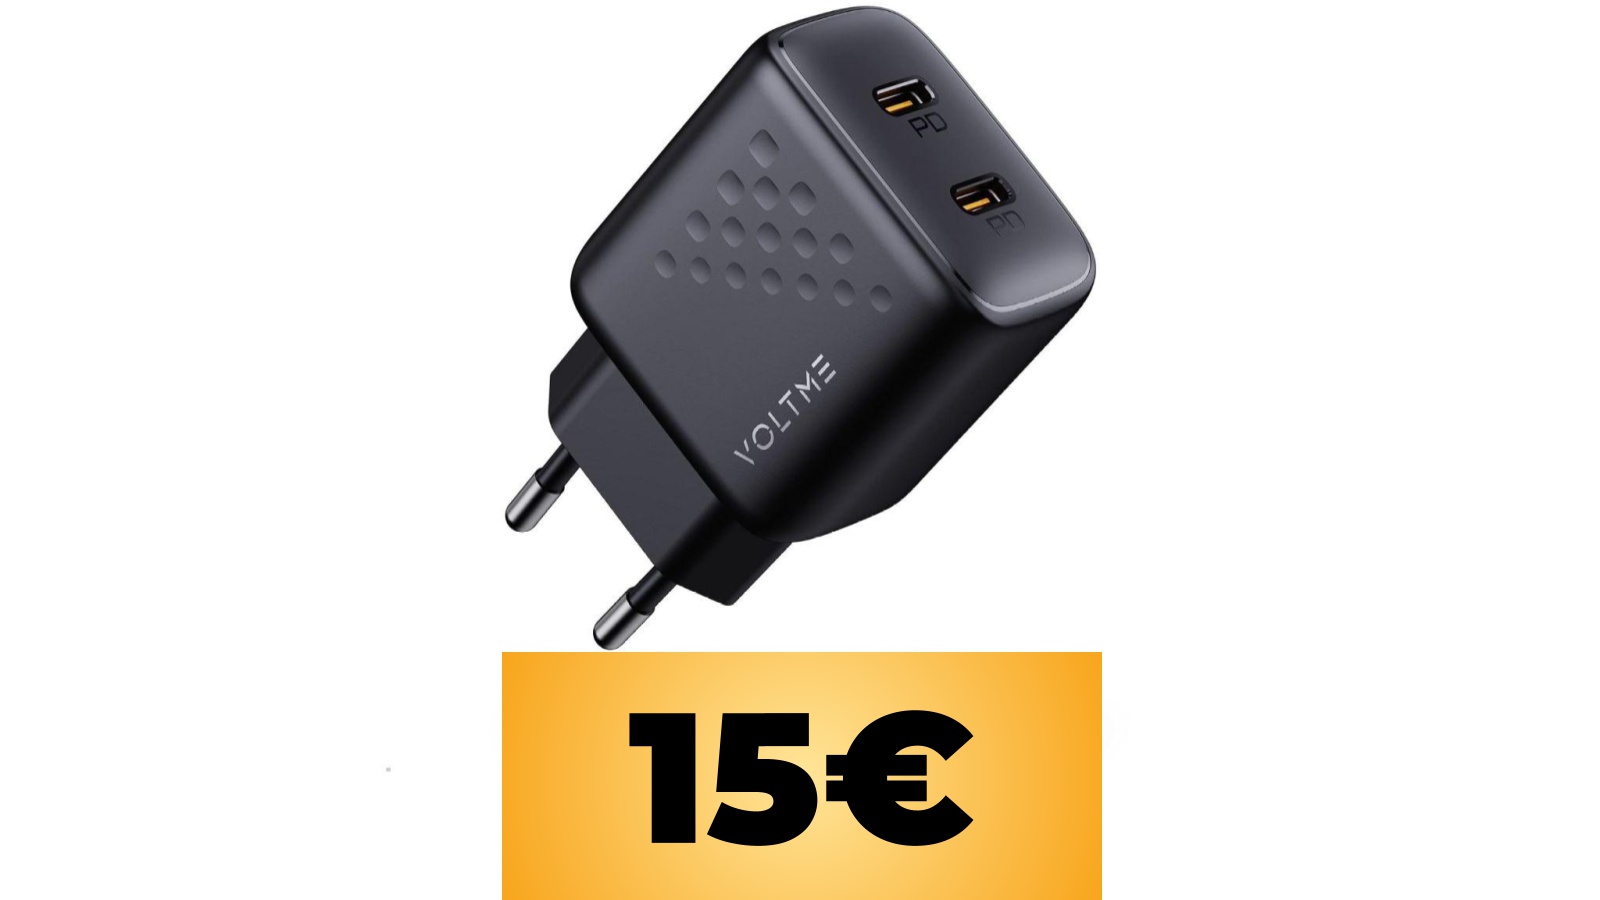 Caricatore USB C a due prese di VOLTME in sconto con questo coupon su Amazon Italia